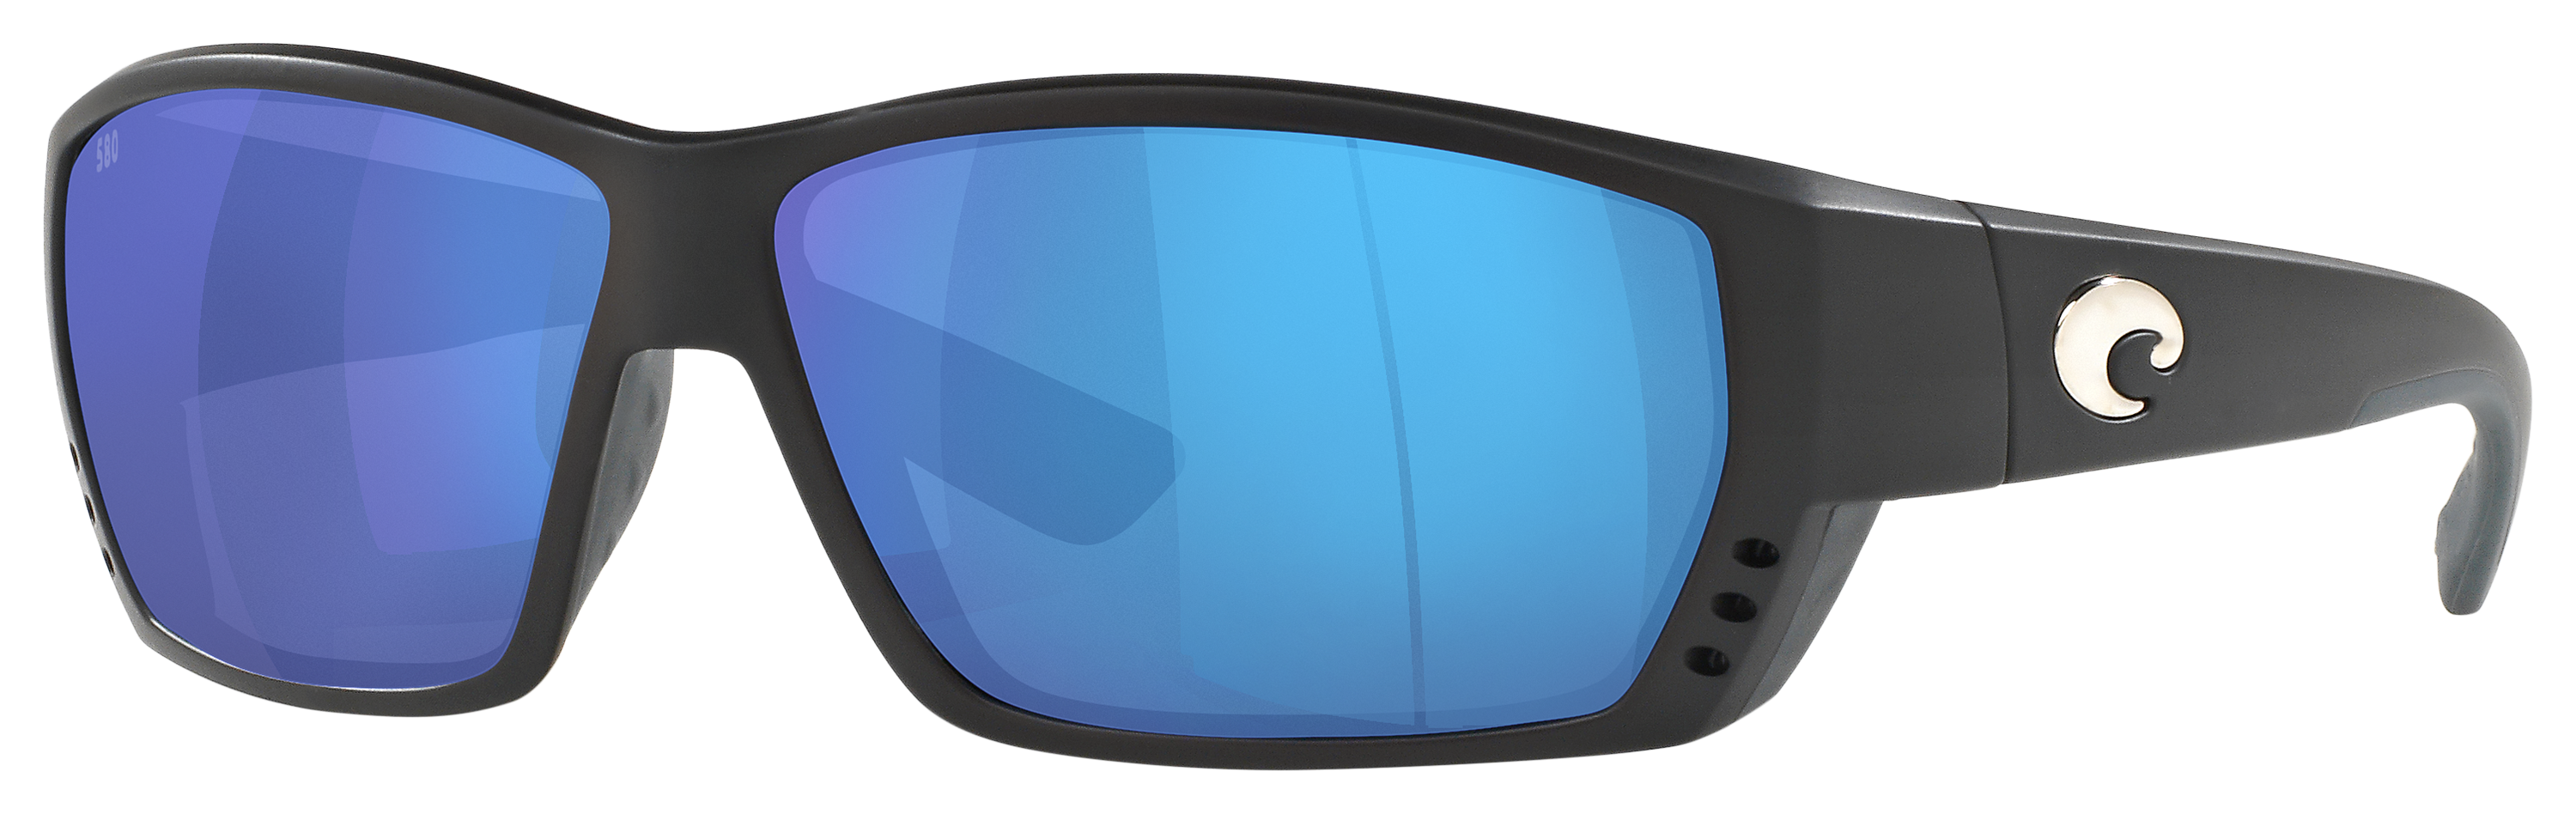 Costa Del Mar Tuna Alley 580G Glass Polarized Sunglasses - Matte Black/Blue Mirror - X-Large